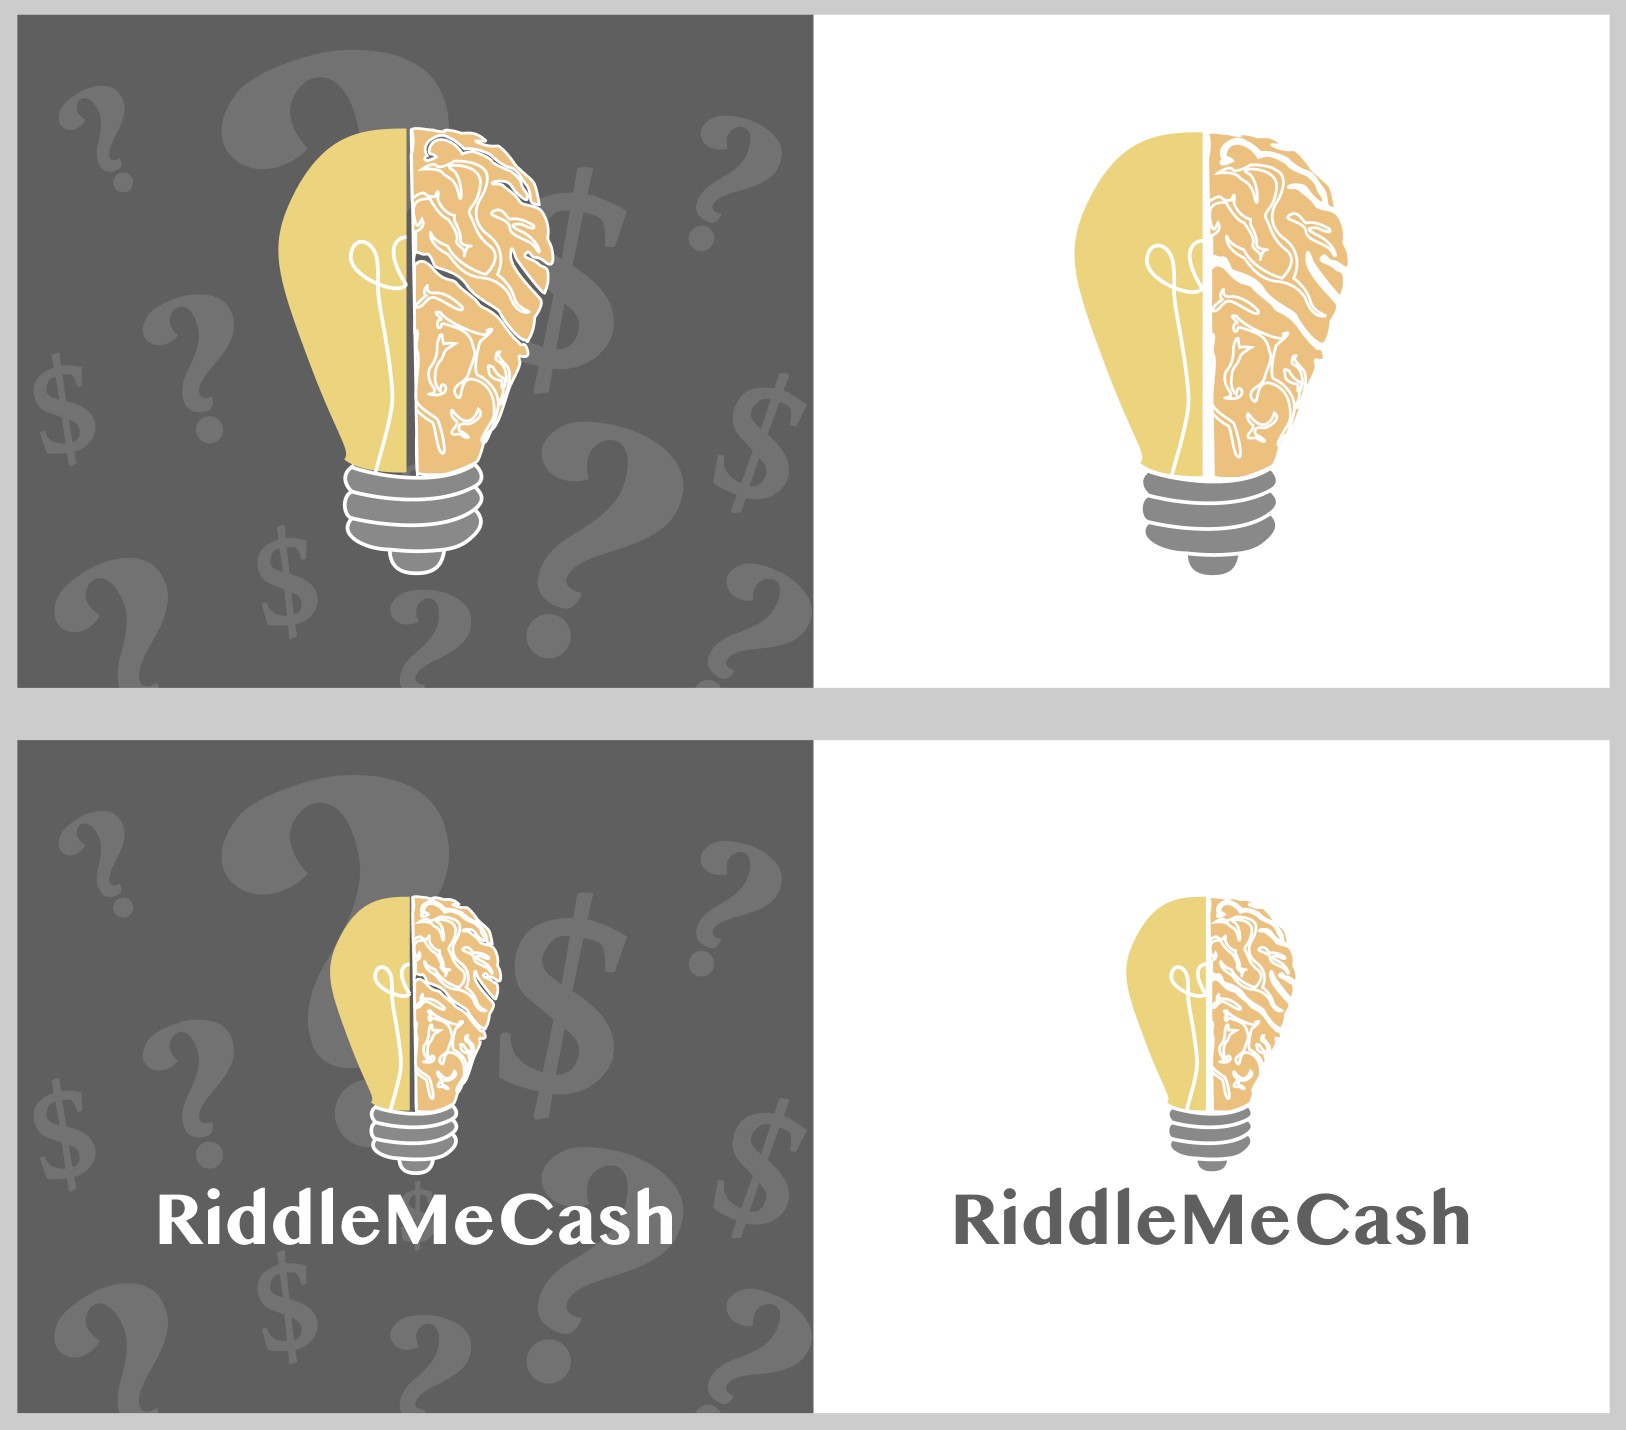 riddlemecash logos